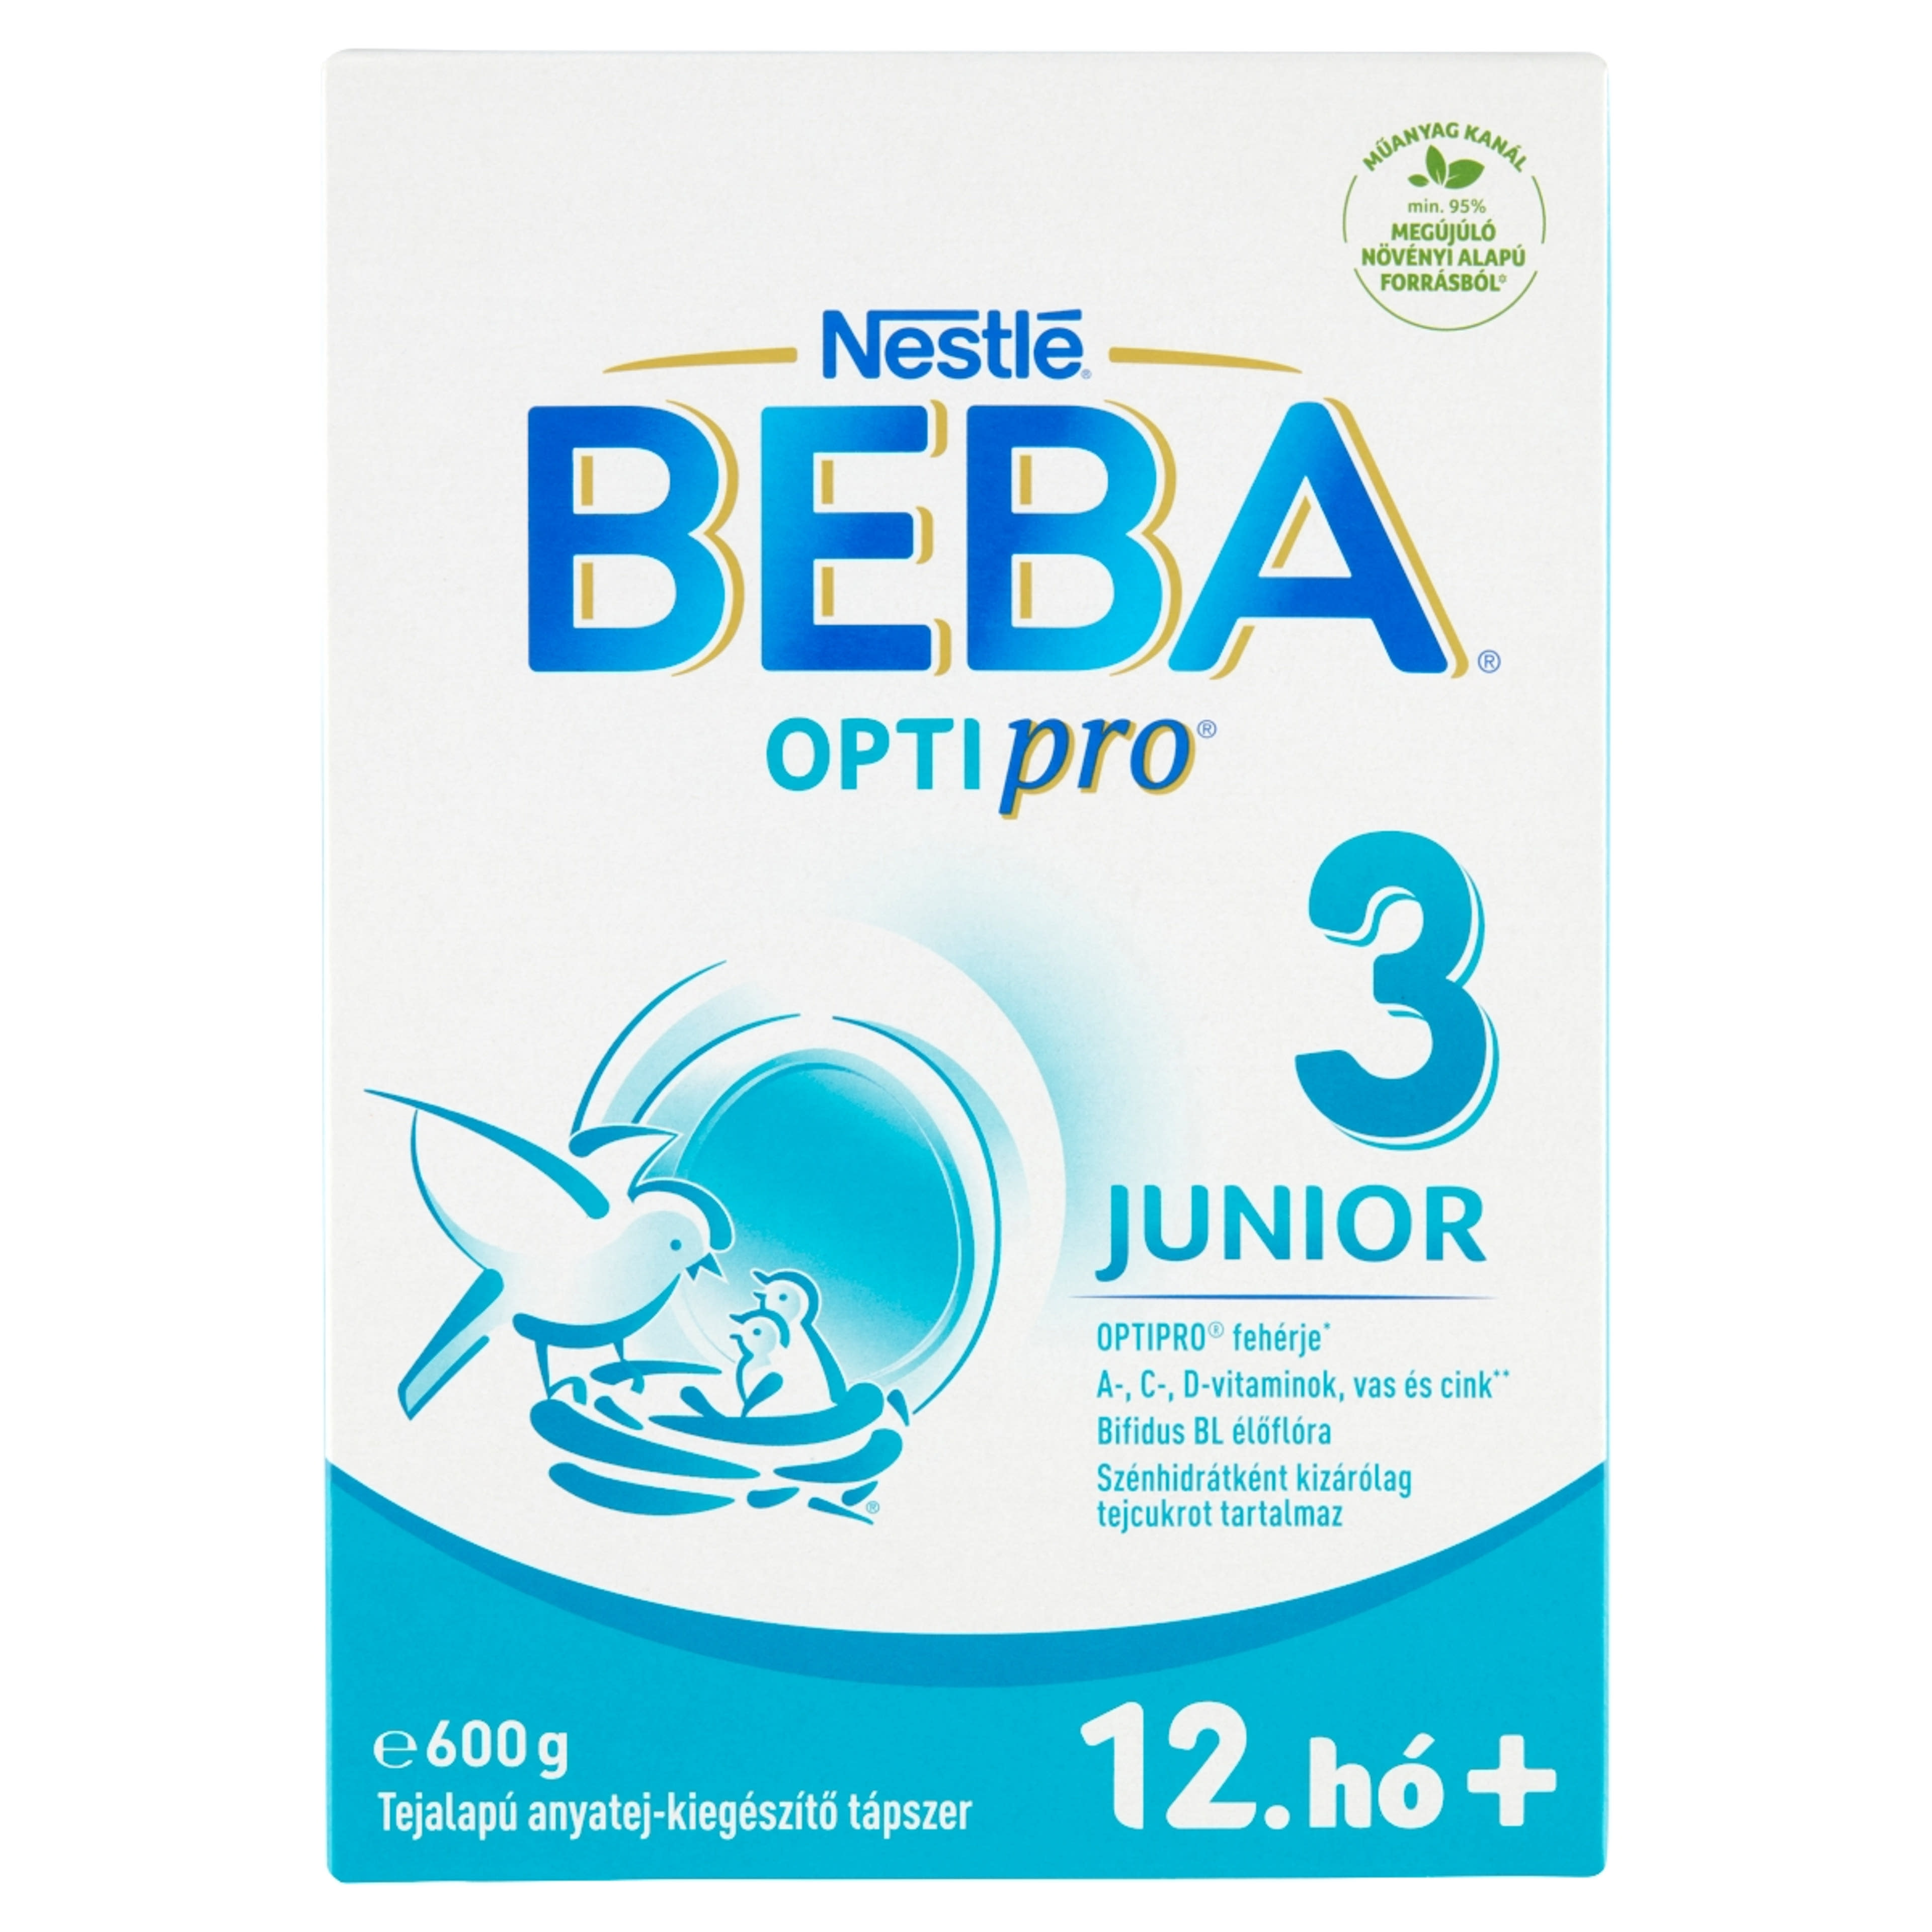 BEBA OPTIPRO Junior 3 tejalapú anyatej-kiegészítő tápszer 12. hónapos kortól - 600 g